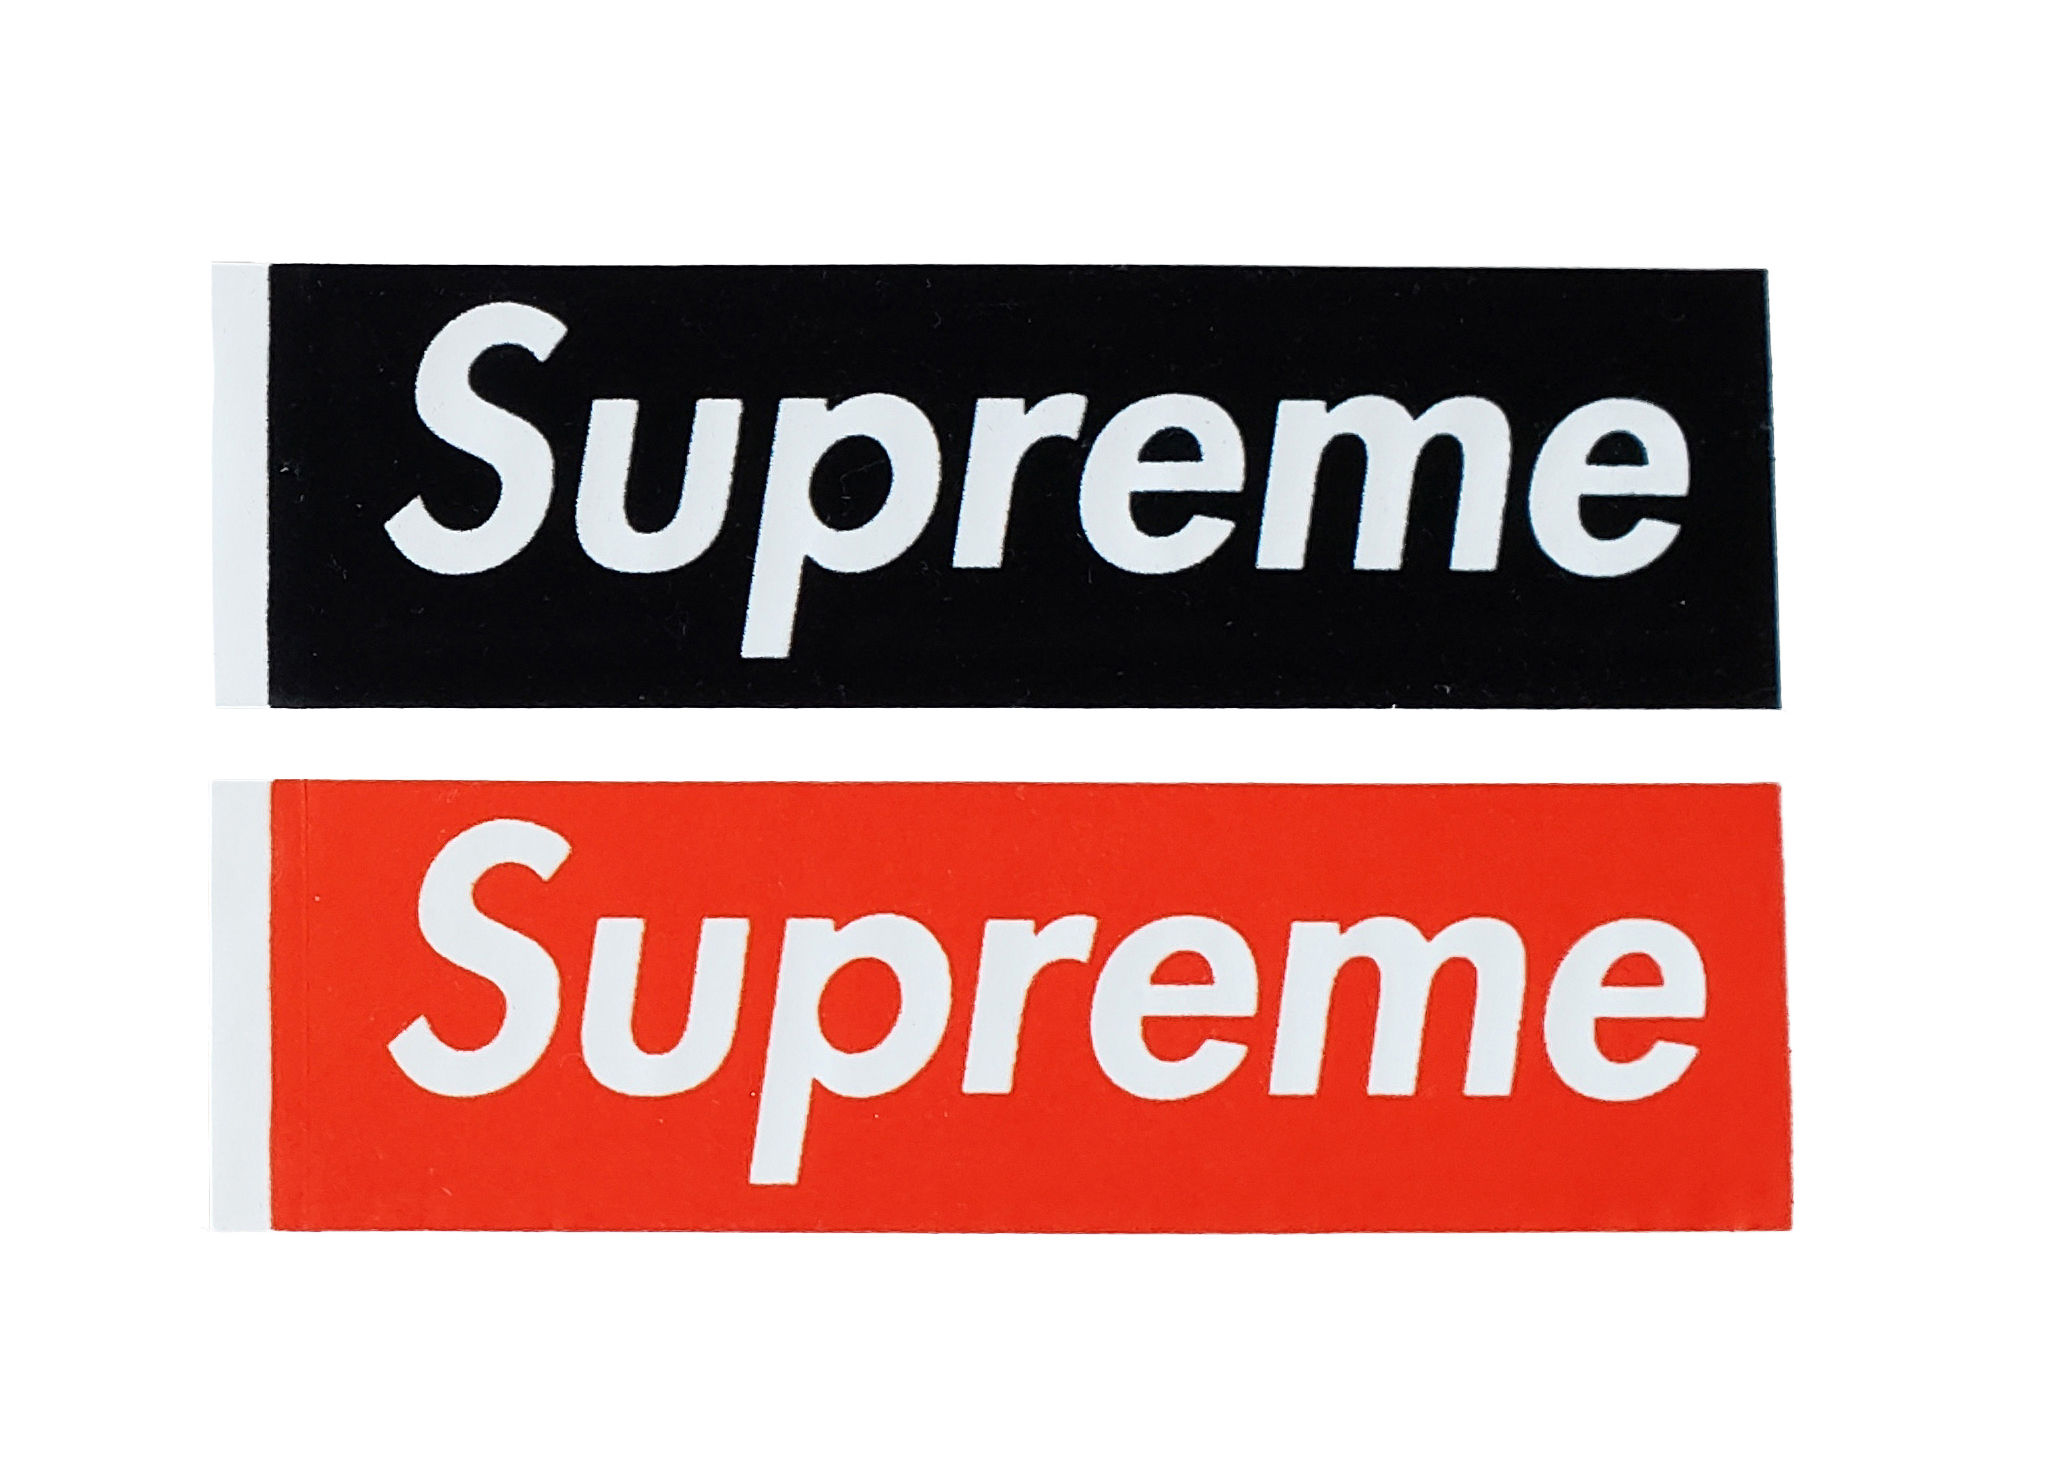 アキラsupreme box logo sticker set